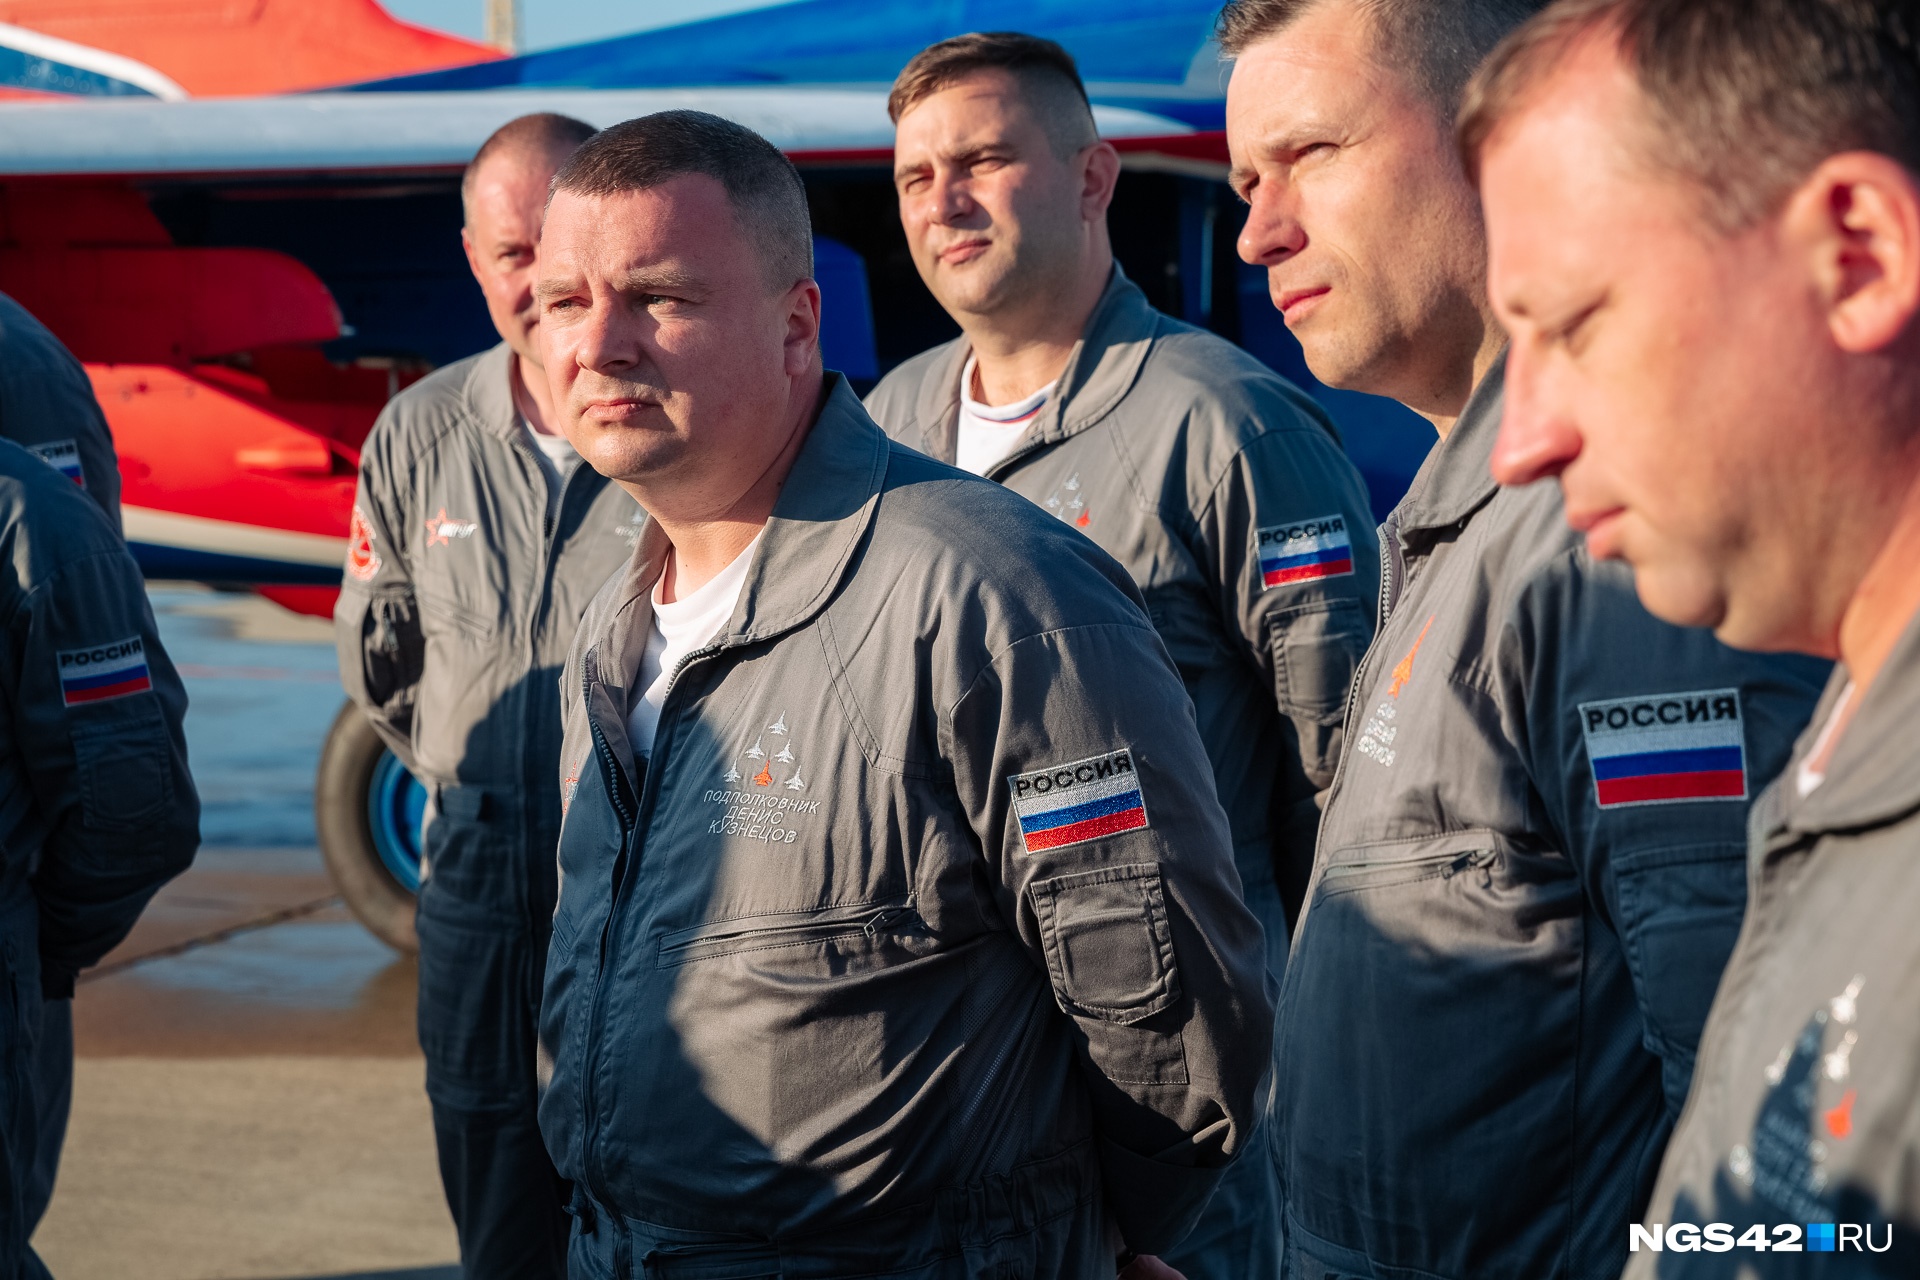 Авиация как мечта: командир авиагруппы «Стрижи» — о первом полете, карьере и возвращении в Кузбасс